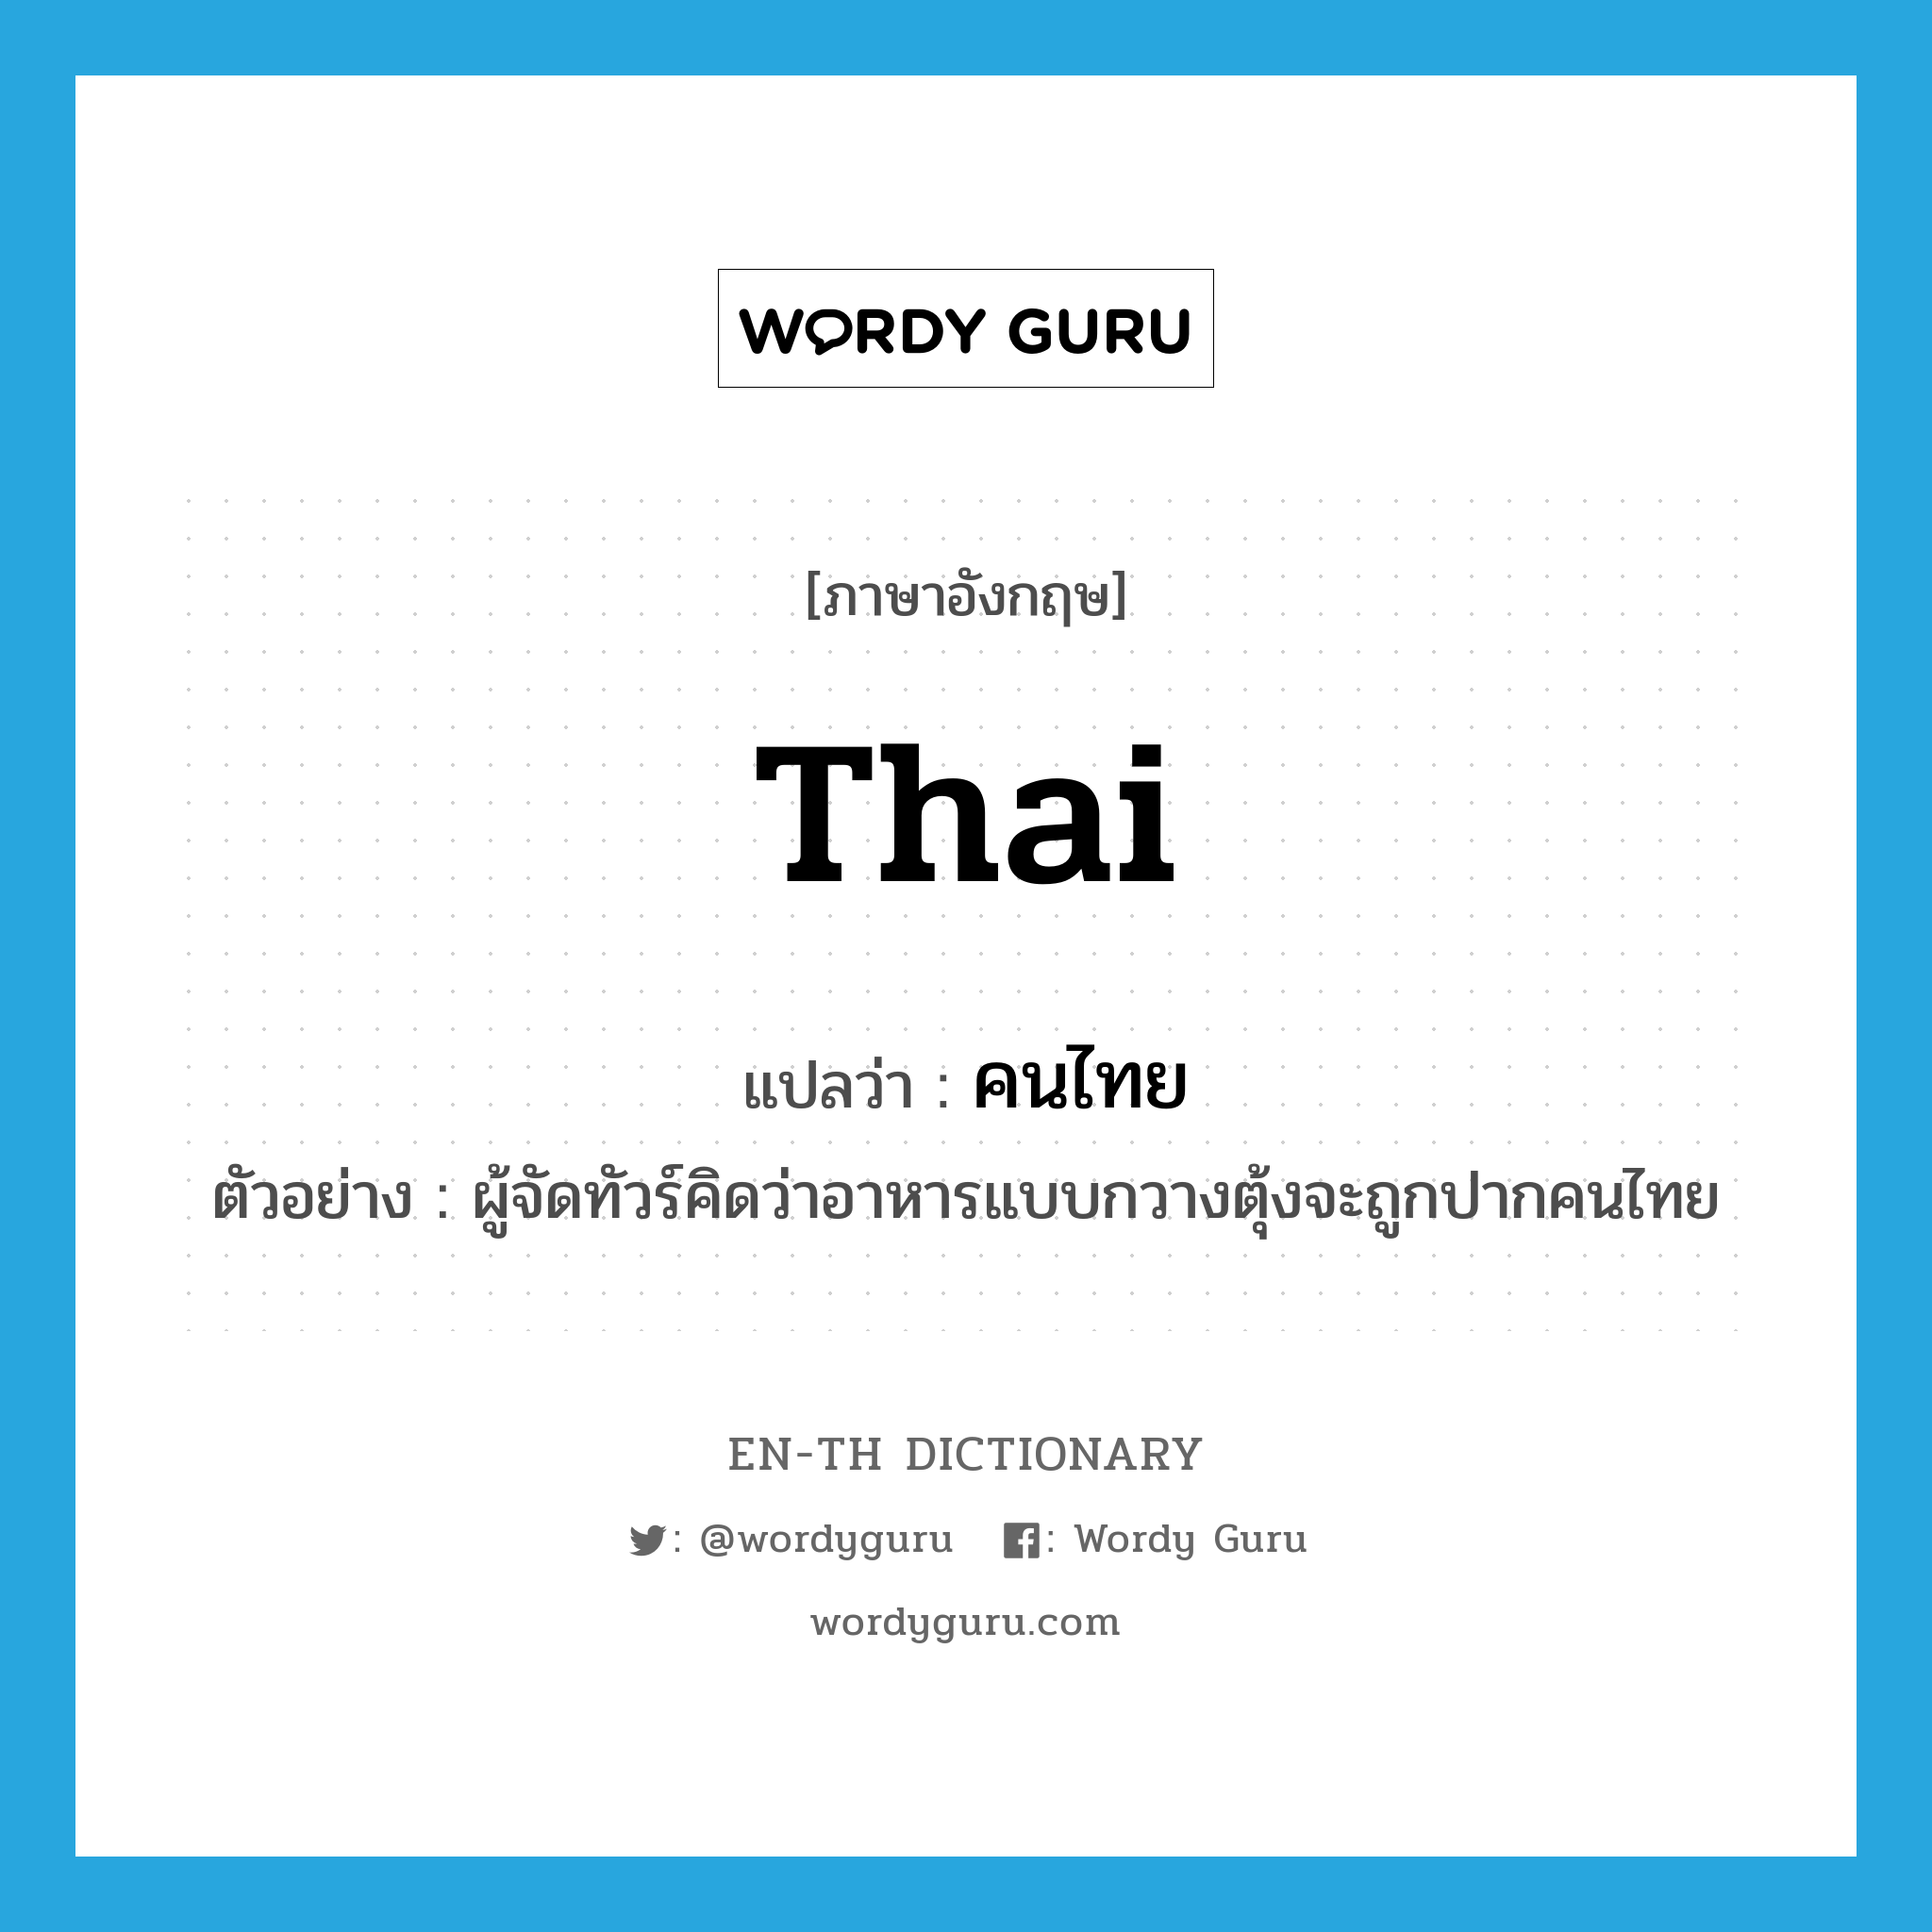 Thai แปลว่า?, คำศัพท์ภาษาอังกฤษ Thai แปลว่า คนไทย ประเภท N ตัวอย่าง ผู้จัดทัวร์คิดว่าอาหารแบบกวางตุ้งจะถูกปากคนไทย หมวด N